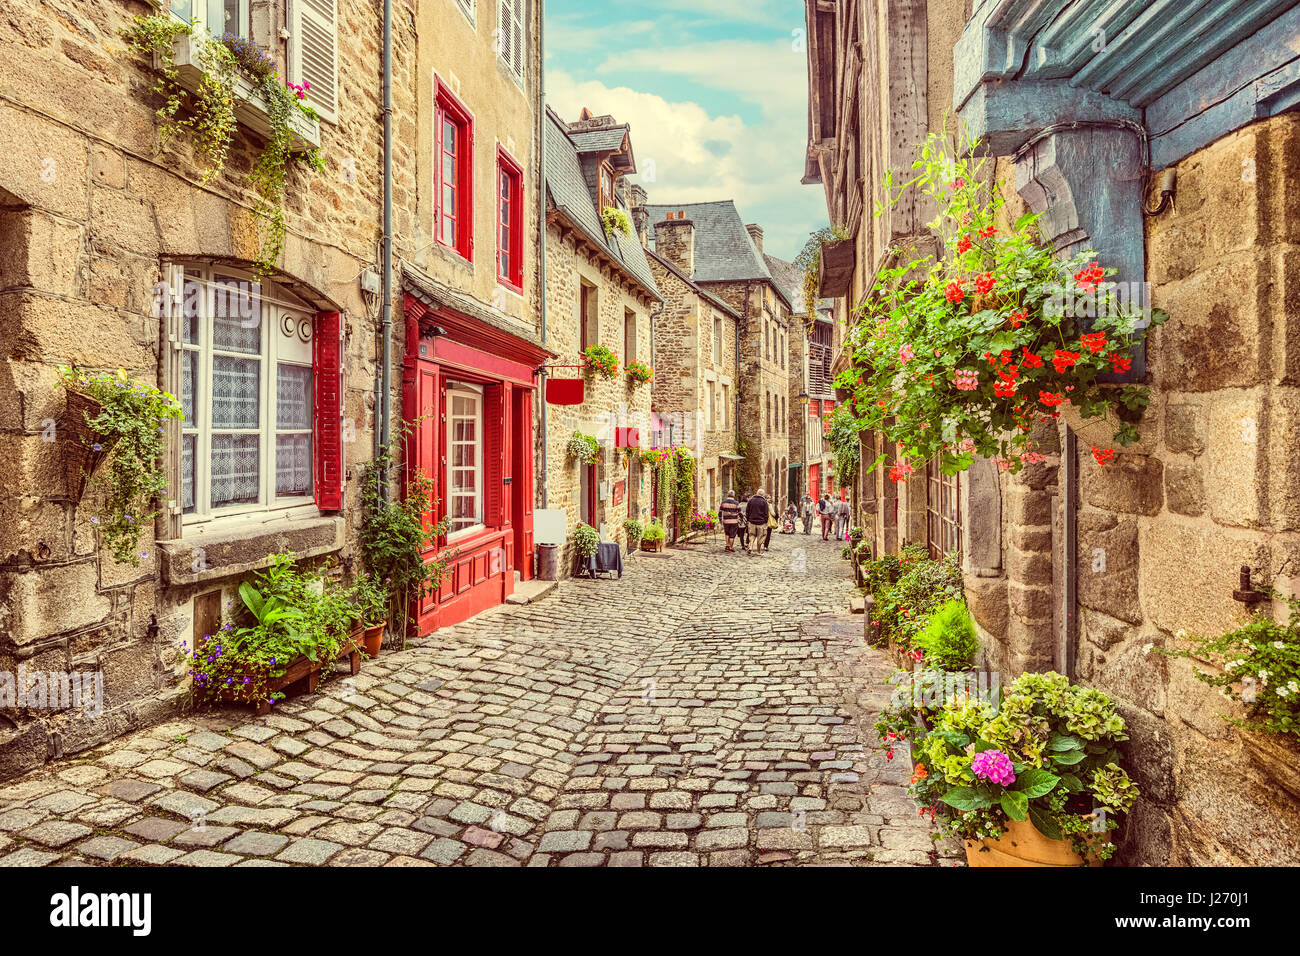 Hermosa vista del pintoresco callejón estrecho con históricas casas tradicionales y calle de adoquines en una vieja ciudad en Europa con el cielo azul y las nubes en verano Foto de stock